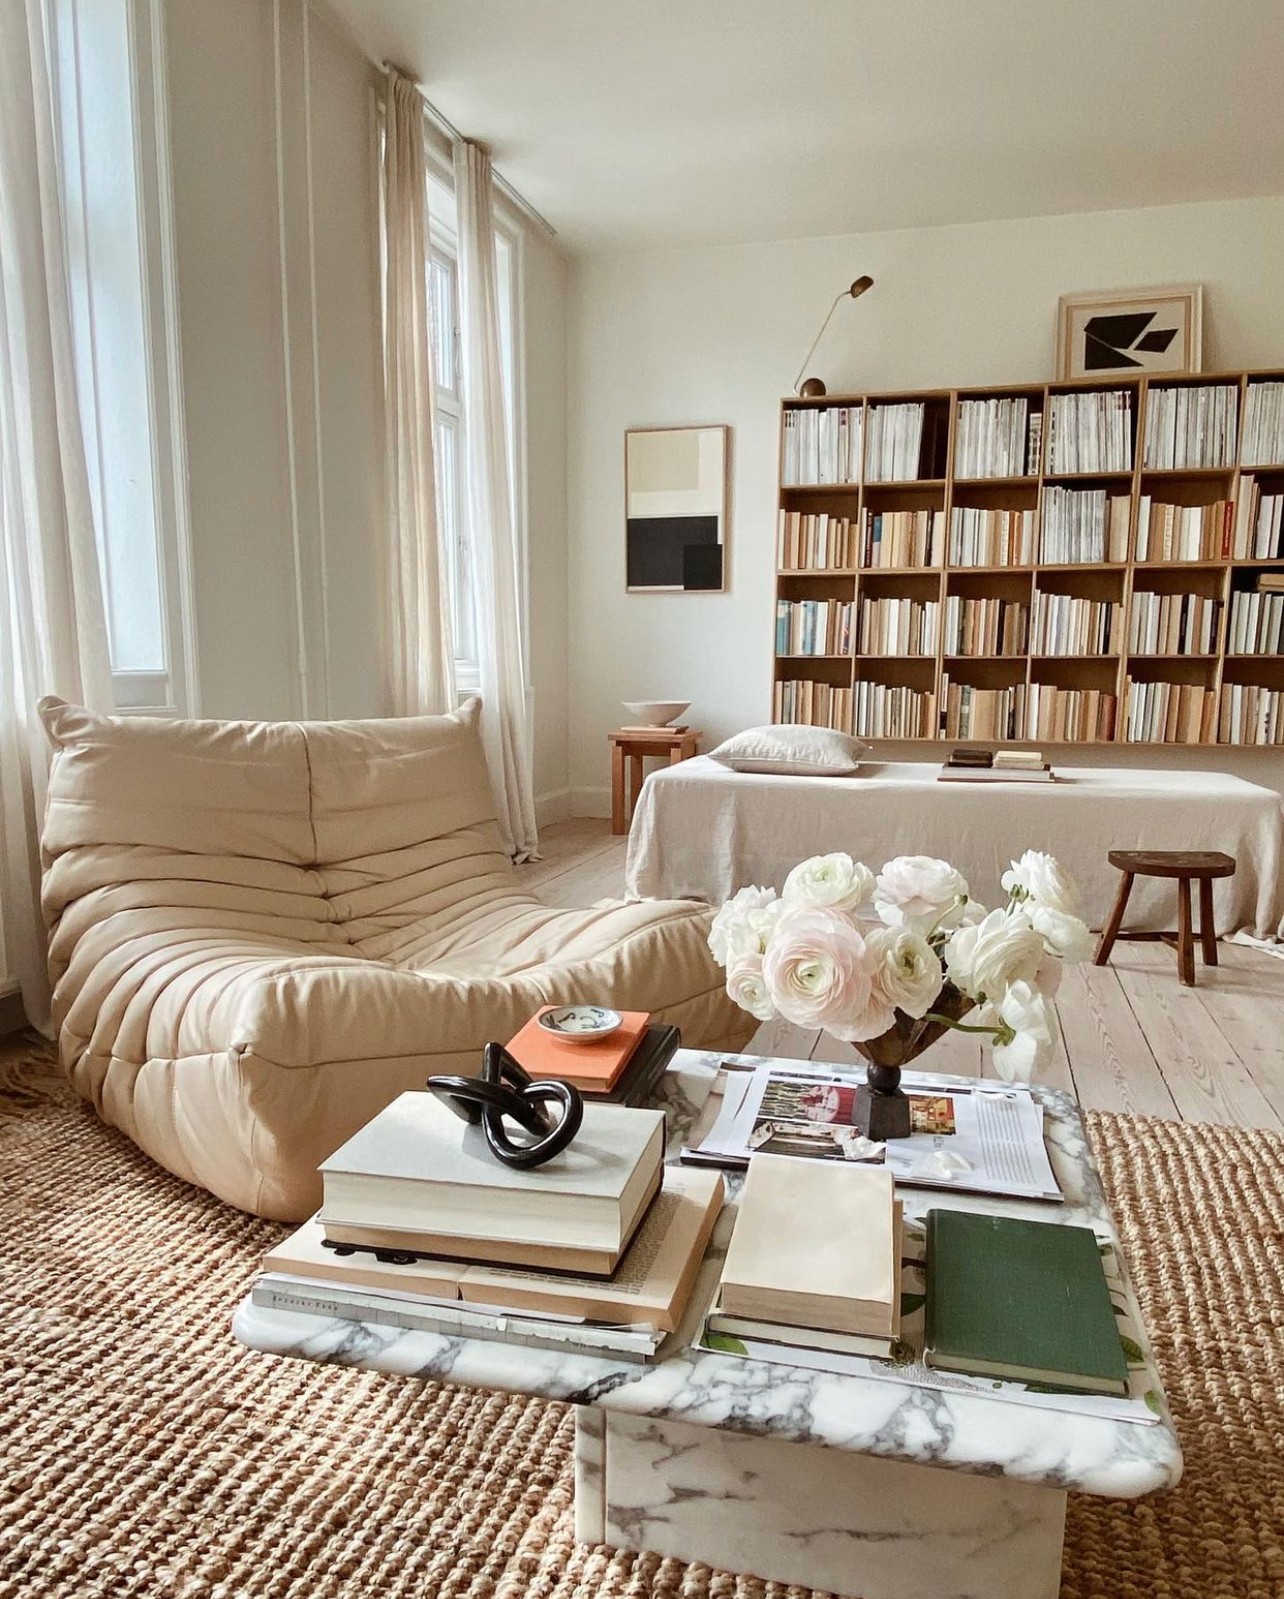 Décor Inspiration | At Home With: Artist & Interior Stylist Simone Polk Dahl